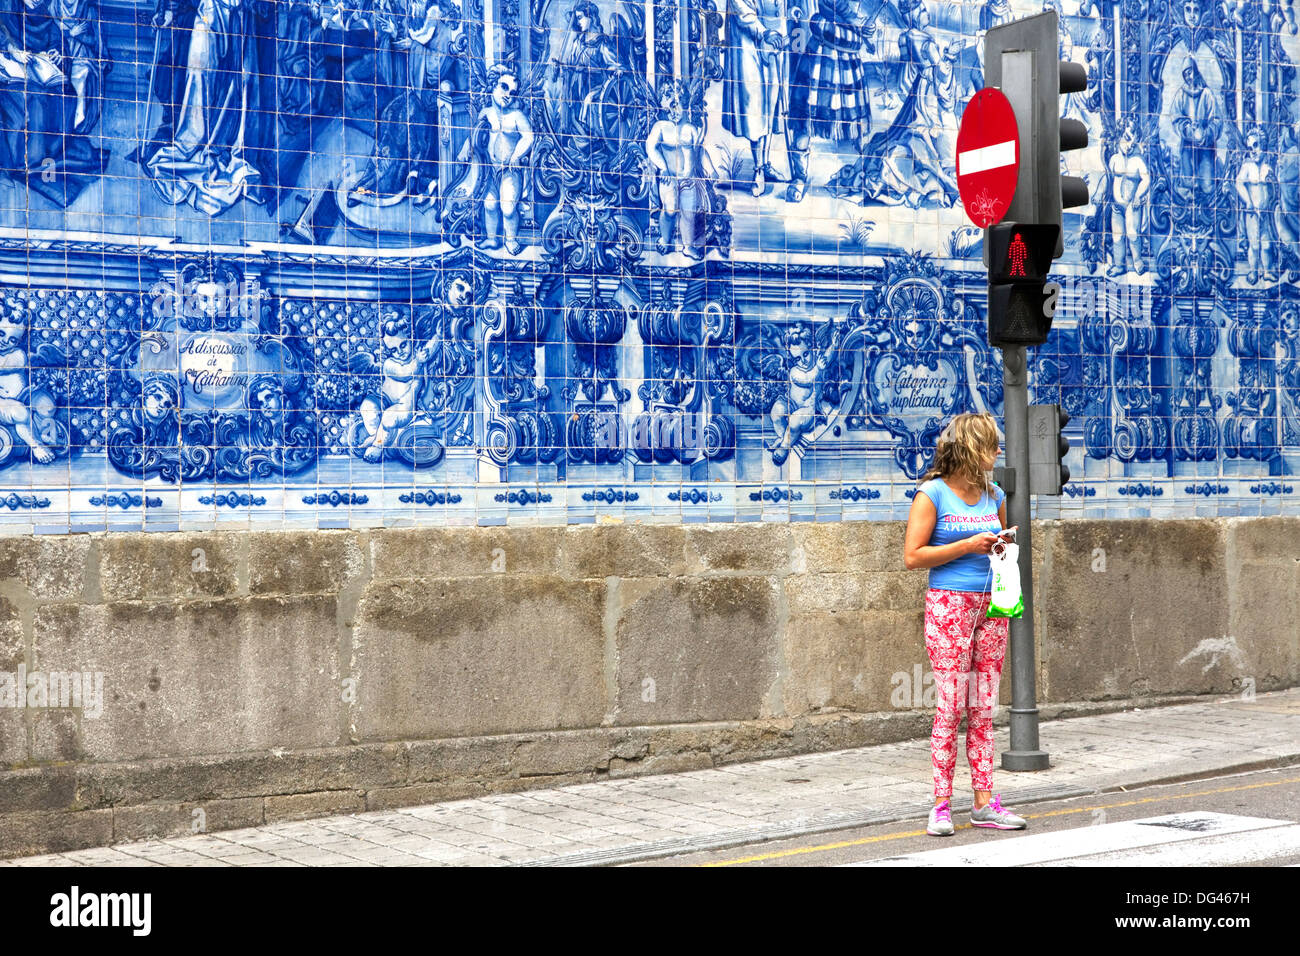 Junge Frau vor blauen Azulejo-Fliesen für Wand der Capela Das Almas, Stadtzentrum, Porto, Portugal Stockfoto